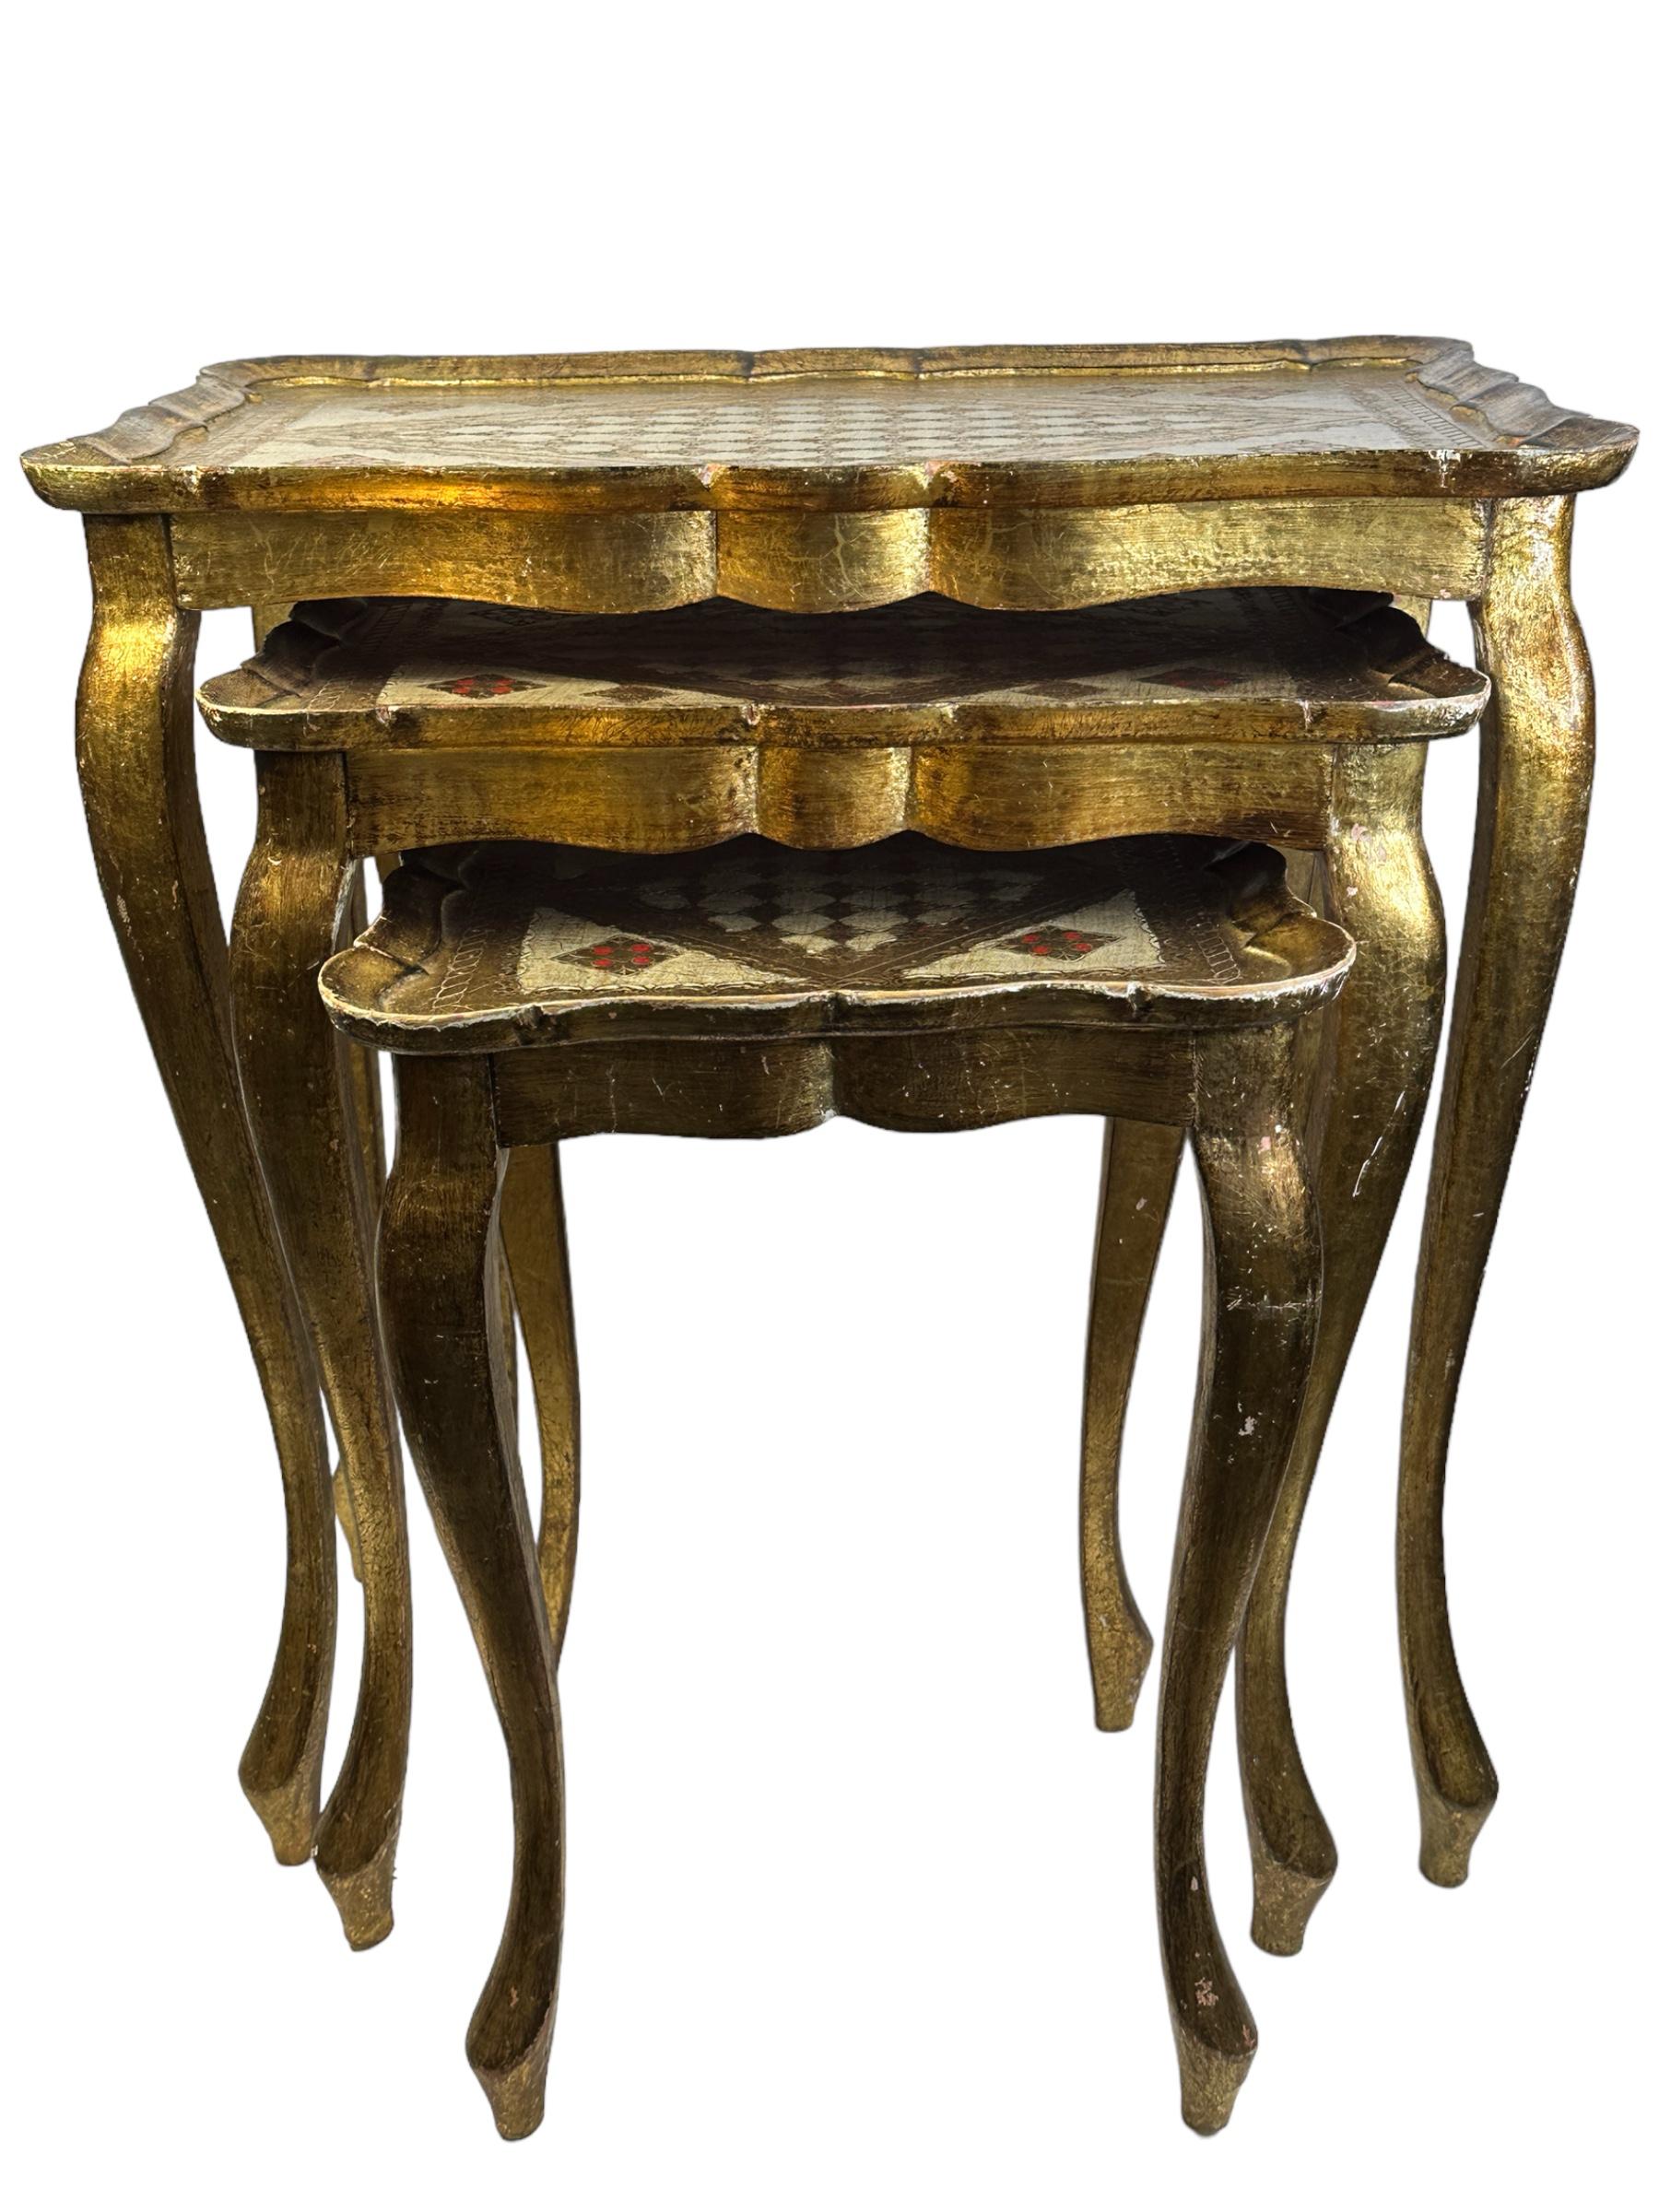 Dieser Satz von drei florentinischen Tischen wurde um 1960 in Italien hergestellt. Sie zeichnen sich durch Cabriole-Beine und aufwendige handgemalte Details auf den Tischplatten mit Wellenkanten aus. Das vergoldete Holz hat eine schön verwitterte